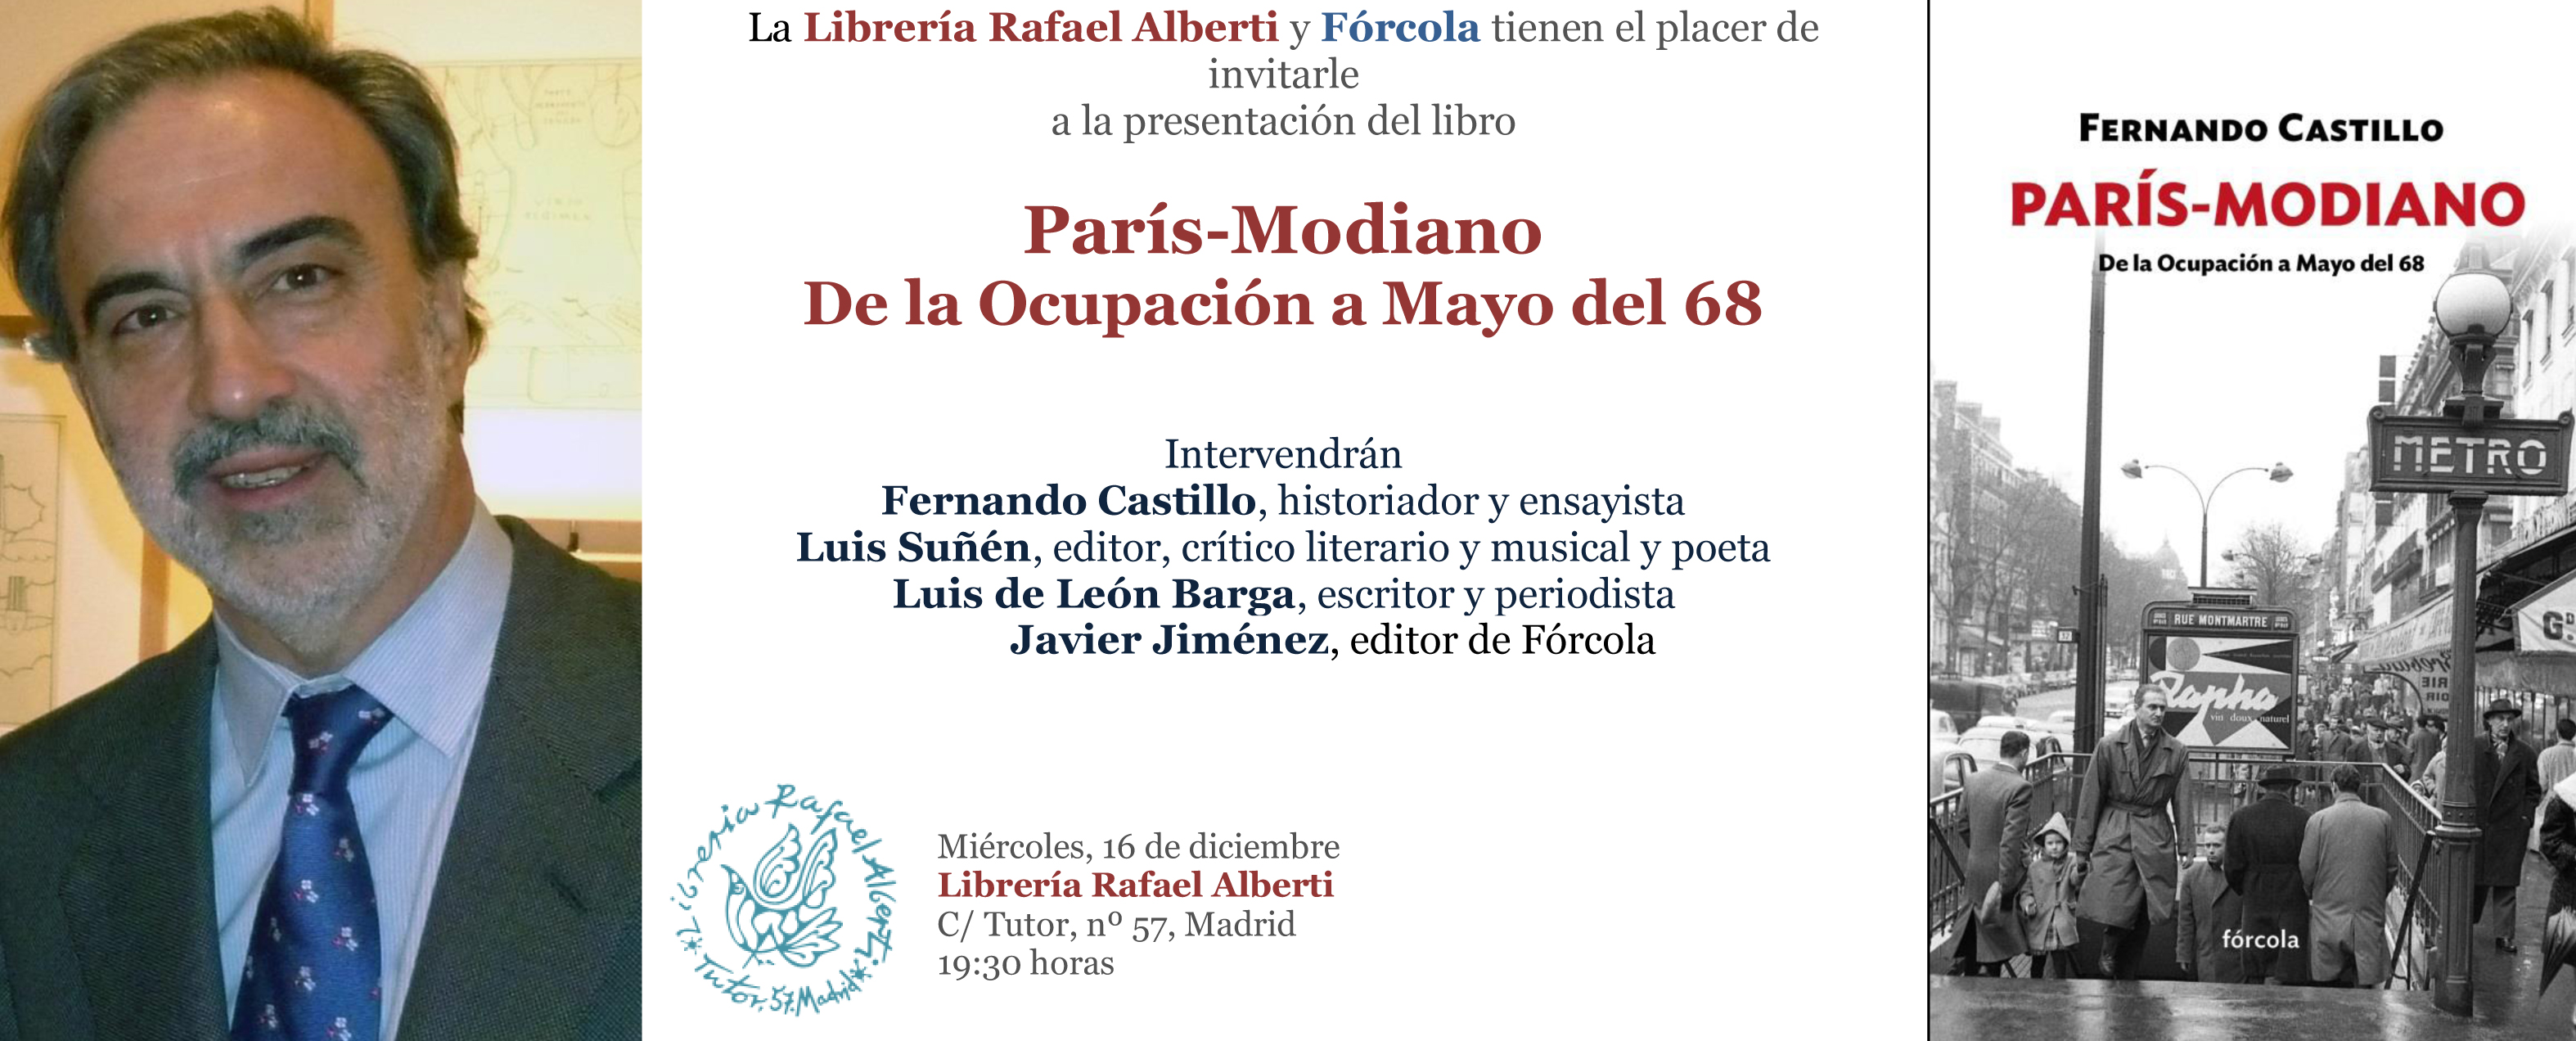 Invitacion_Paris-Modiano_Libreria_Alberti